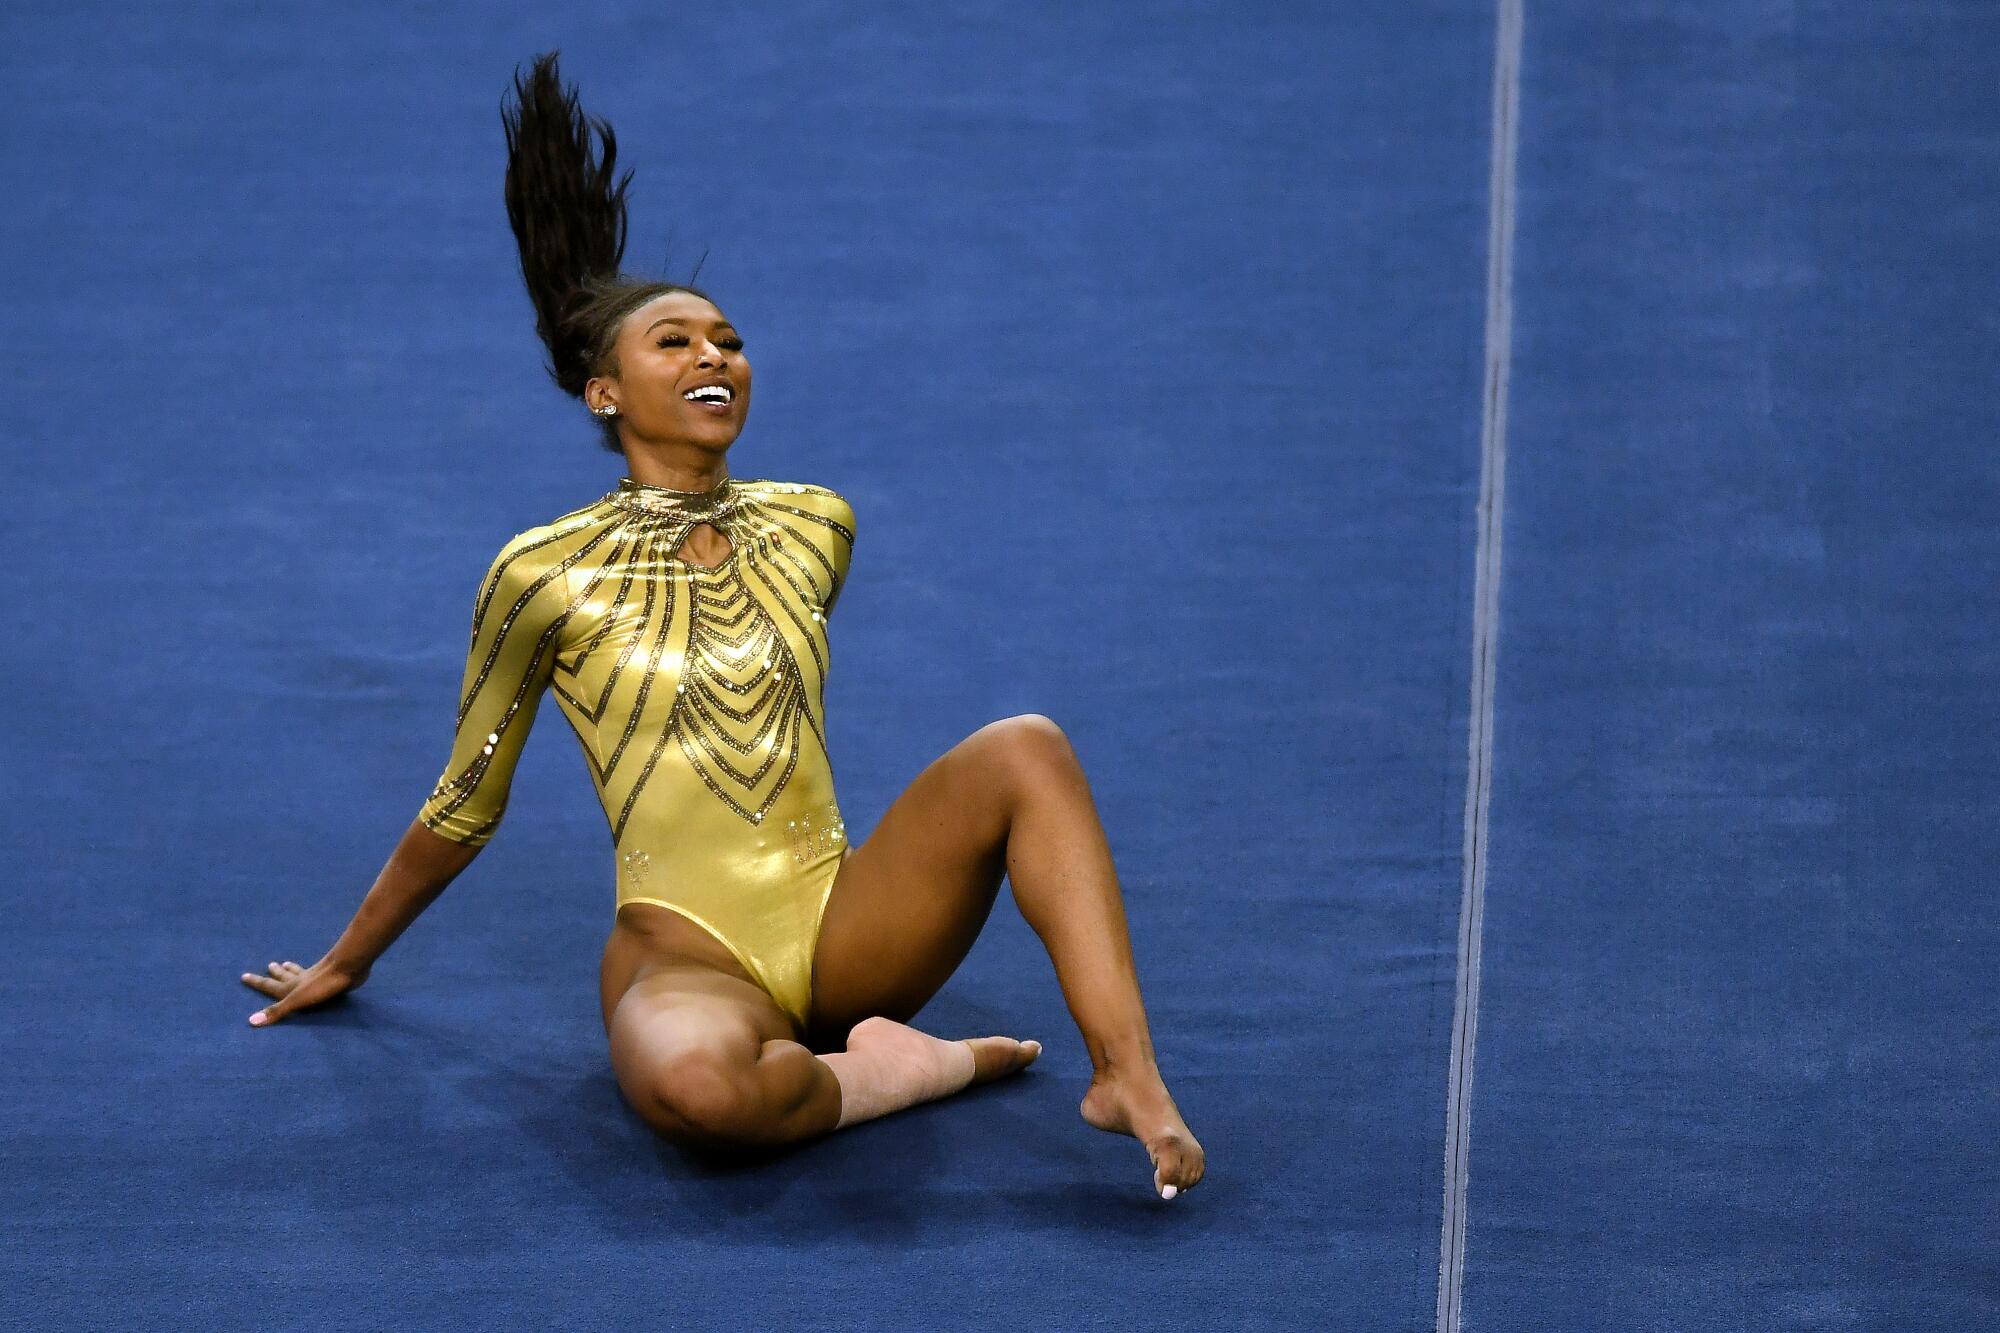 BLM inspires UCLA gymnast Nia Dennis to honor Black culture - Los